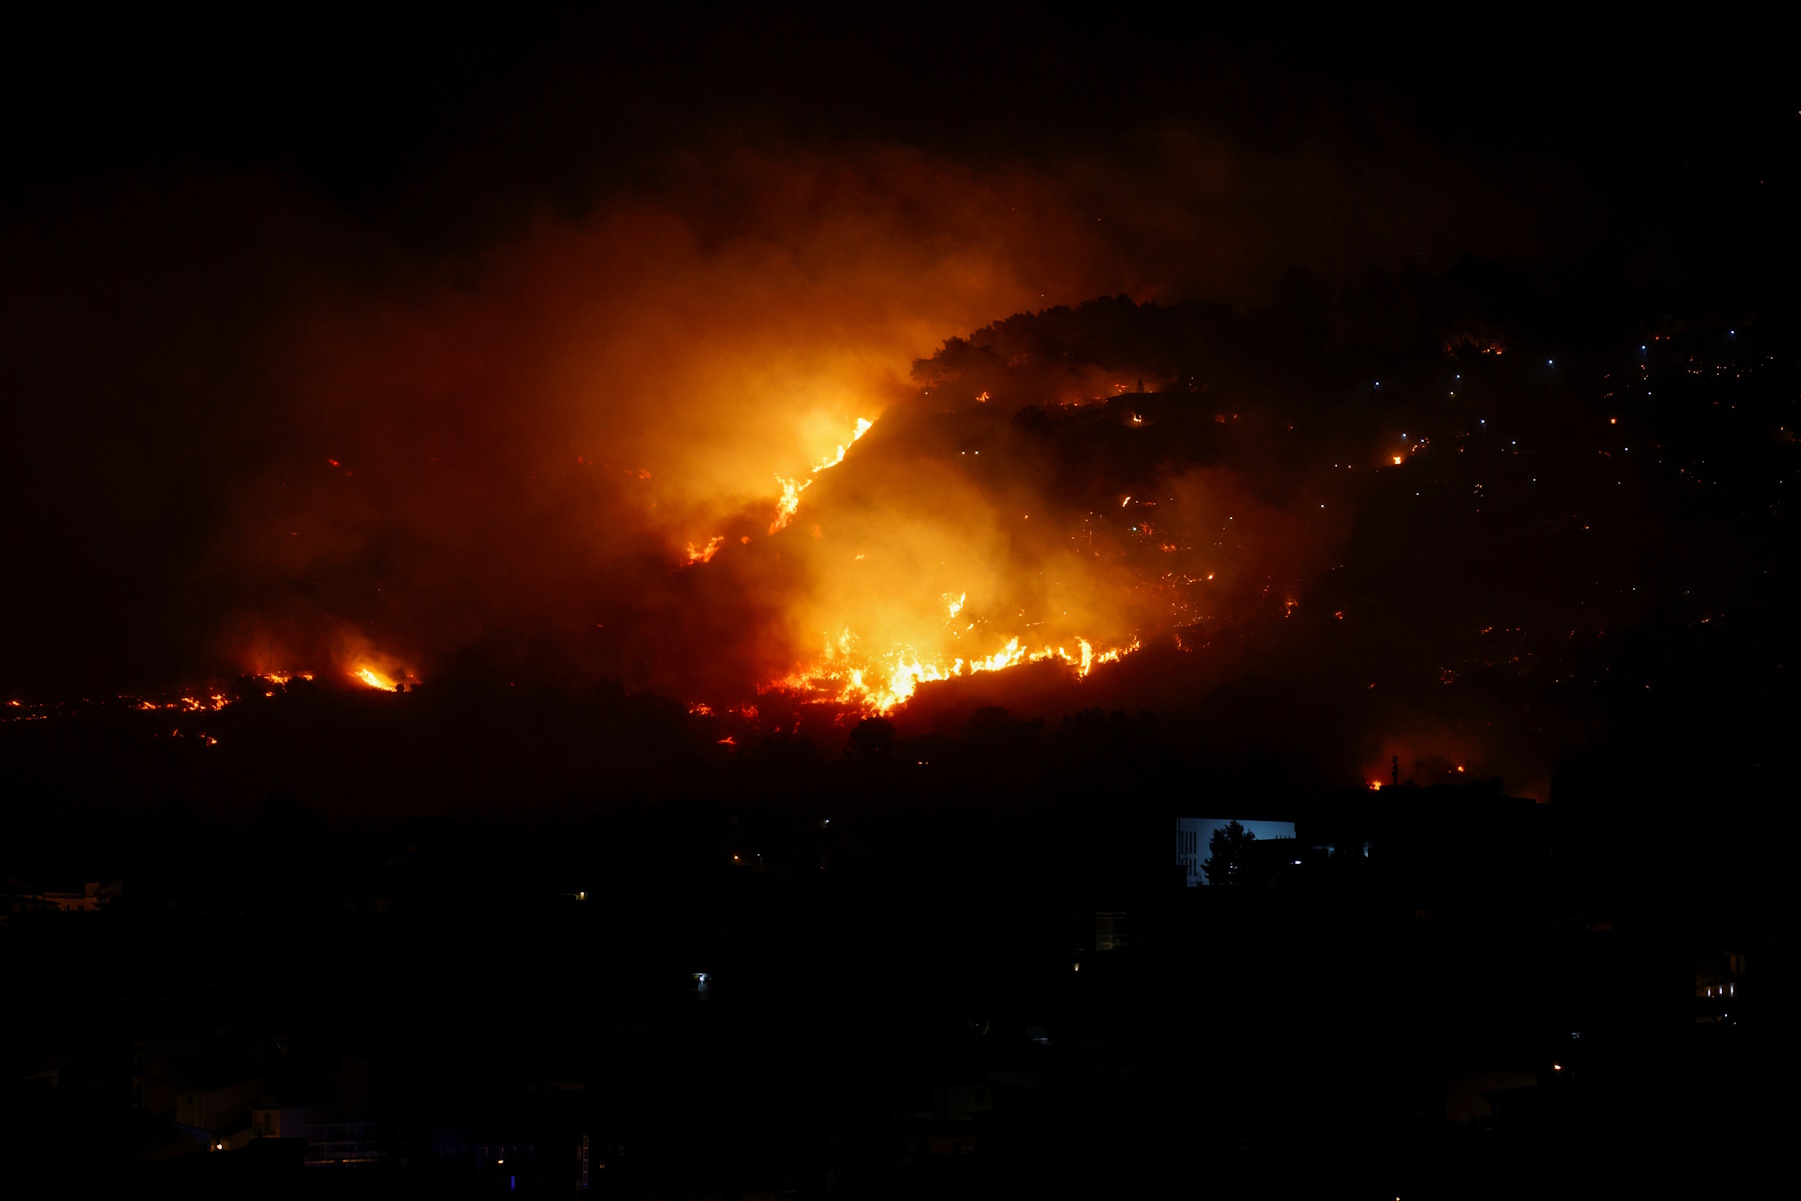 Σικελία: Τουλάχιστον 3 νεκροί από τις φωτιές – Κάηκε δωρικός ναός 2.500 ετών